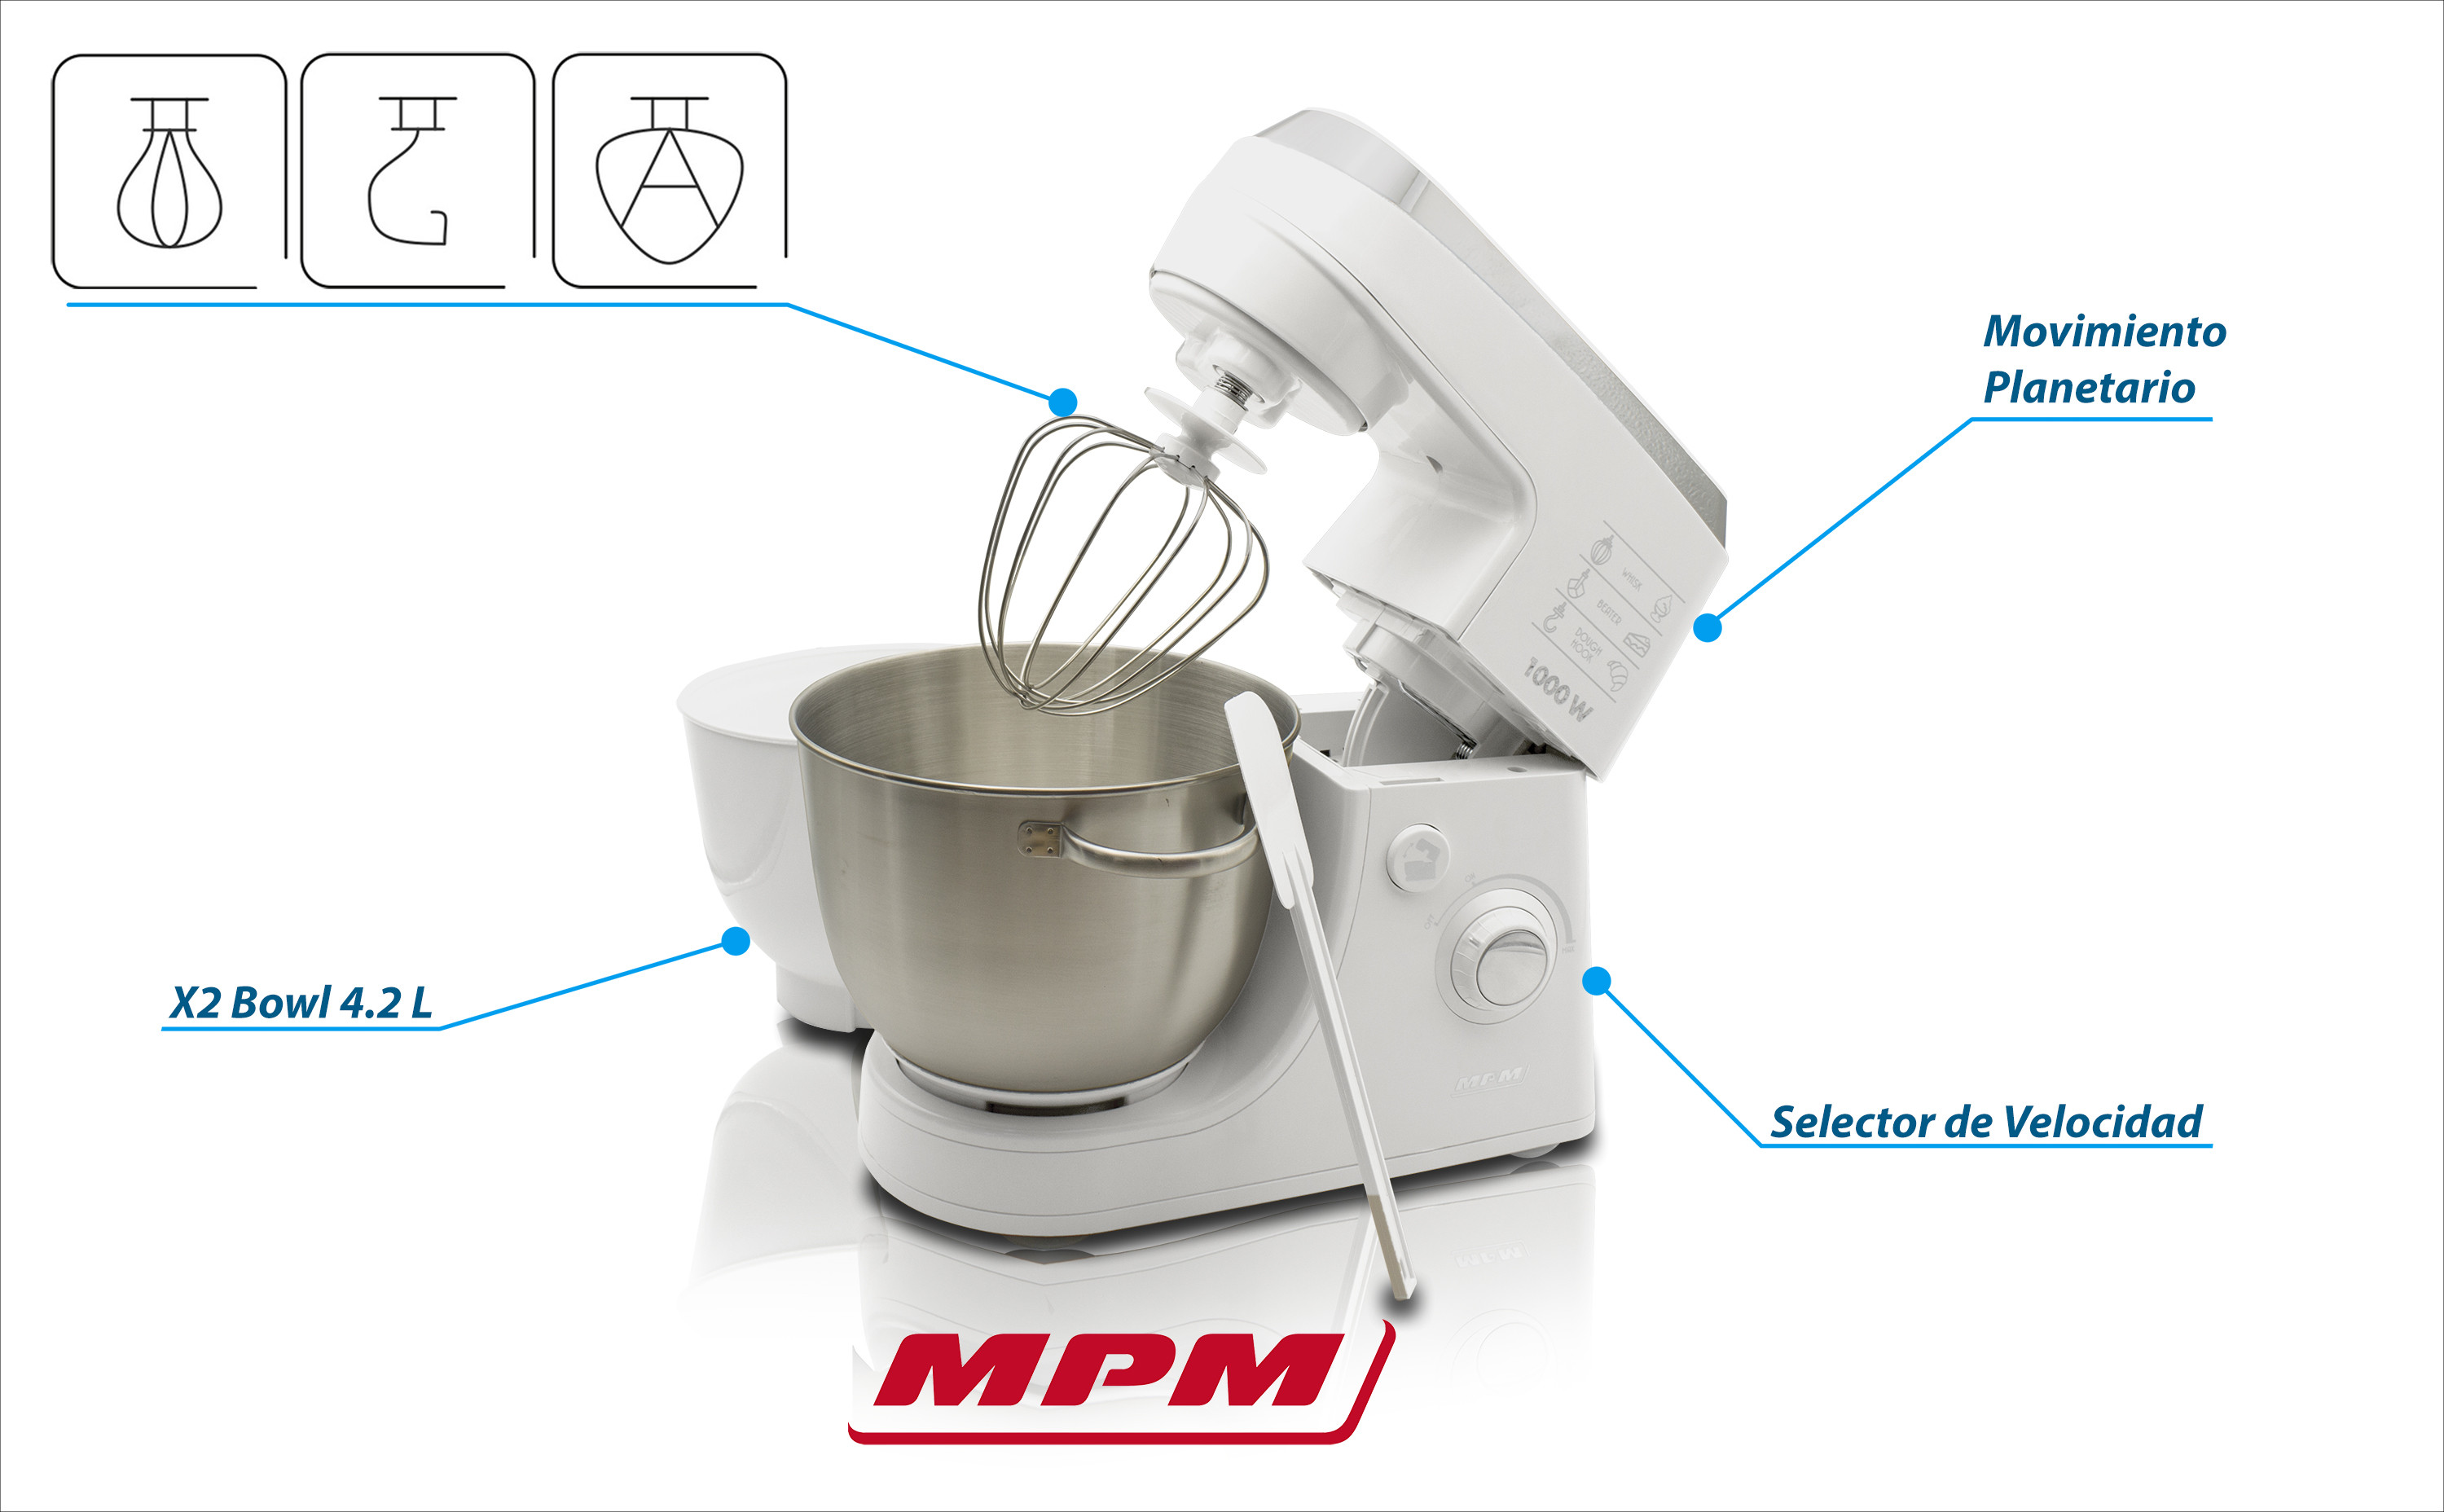 MPM MMR-12 Batidora Amasadora Repostería Profesional Robot Cocina Orbital,  Regulador de Velocidad, 2 Boles de 4,2 litros, 1000W, Blanco